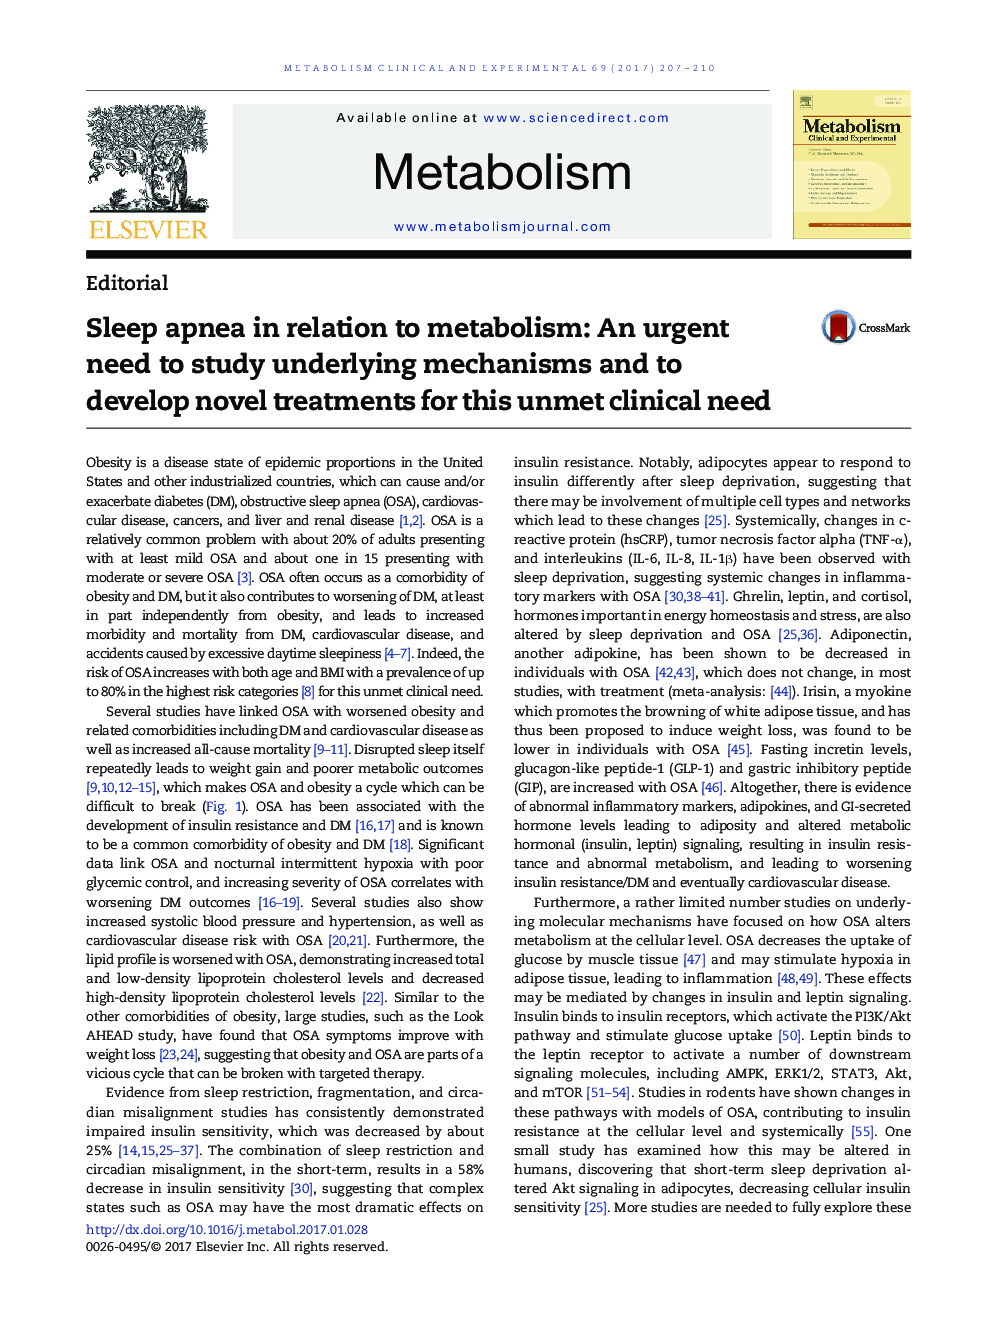 آپنه خواب در ارتباط با متابولیسم: نیاز فوری به مطالعه مکانیزم های زیربنایی و توسعه درمان های جدید برای این نیاز بالینی ناخواسته 